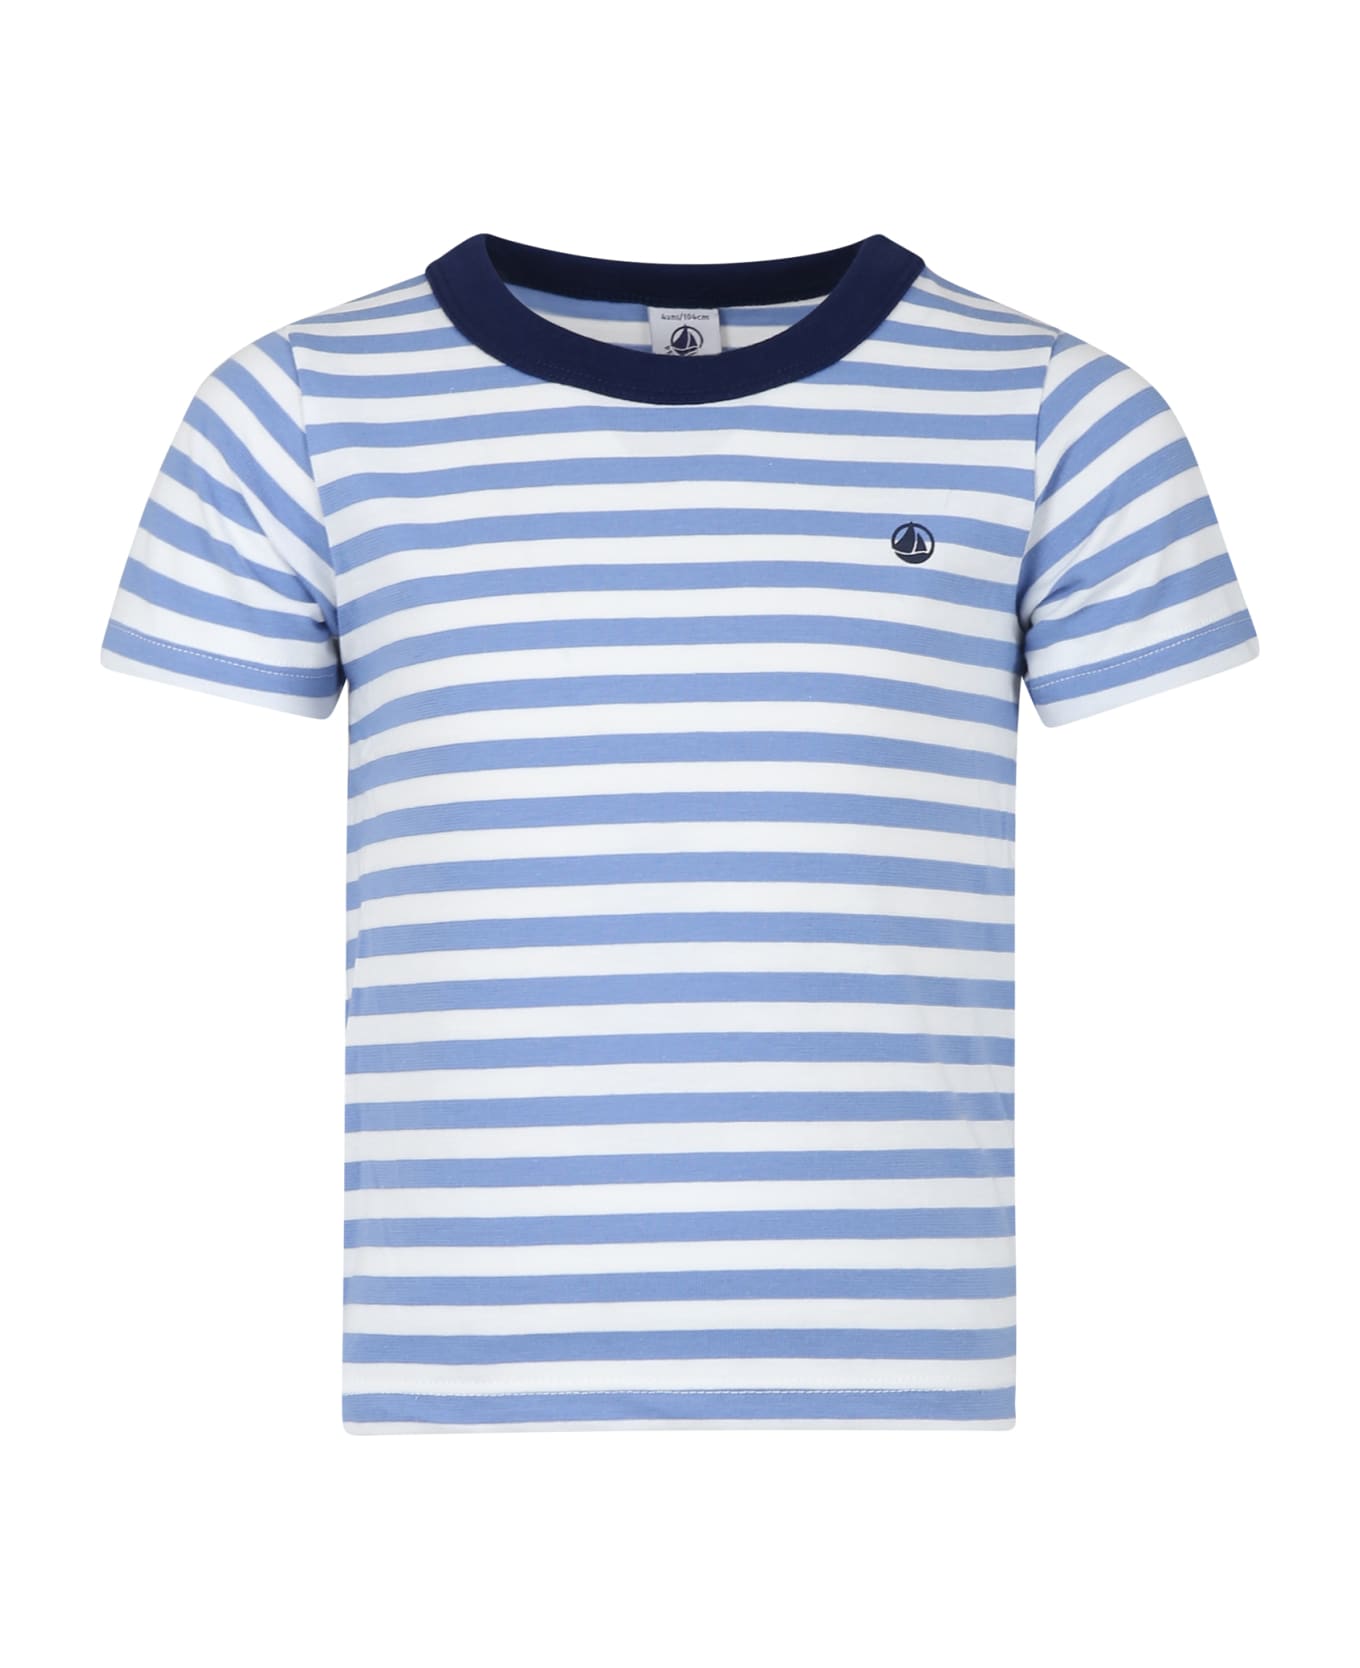 Petit Bateau Light Blue T-shirt For Boy With Stripes - Light Blue